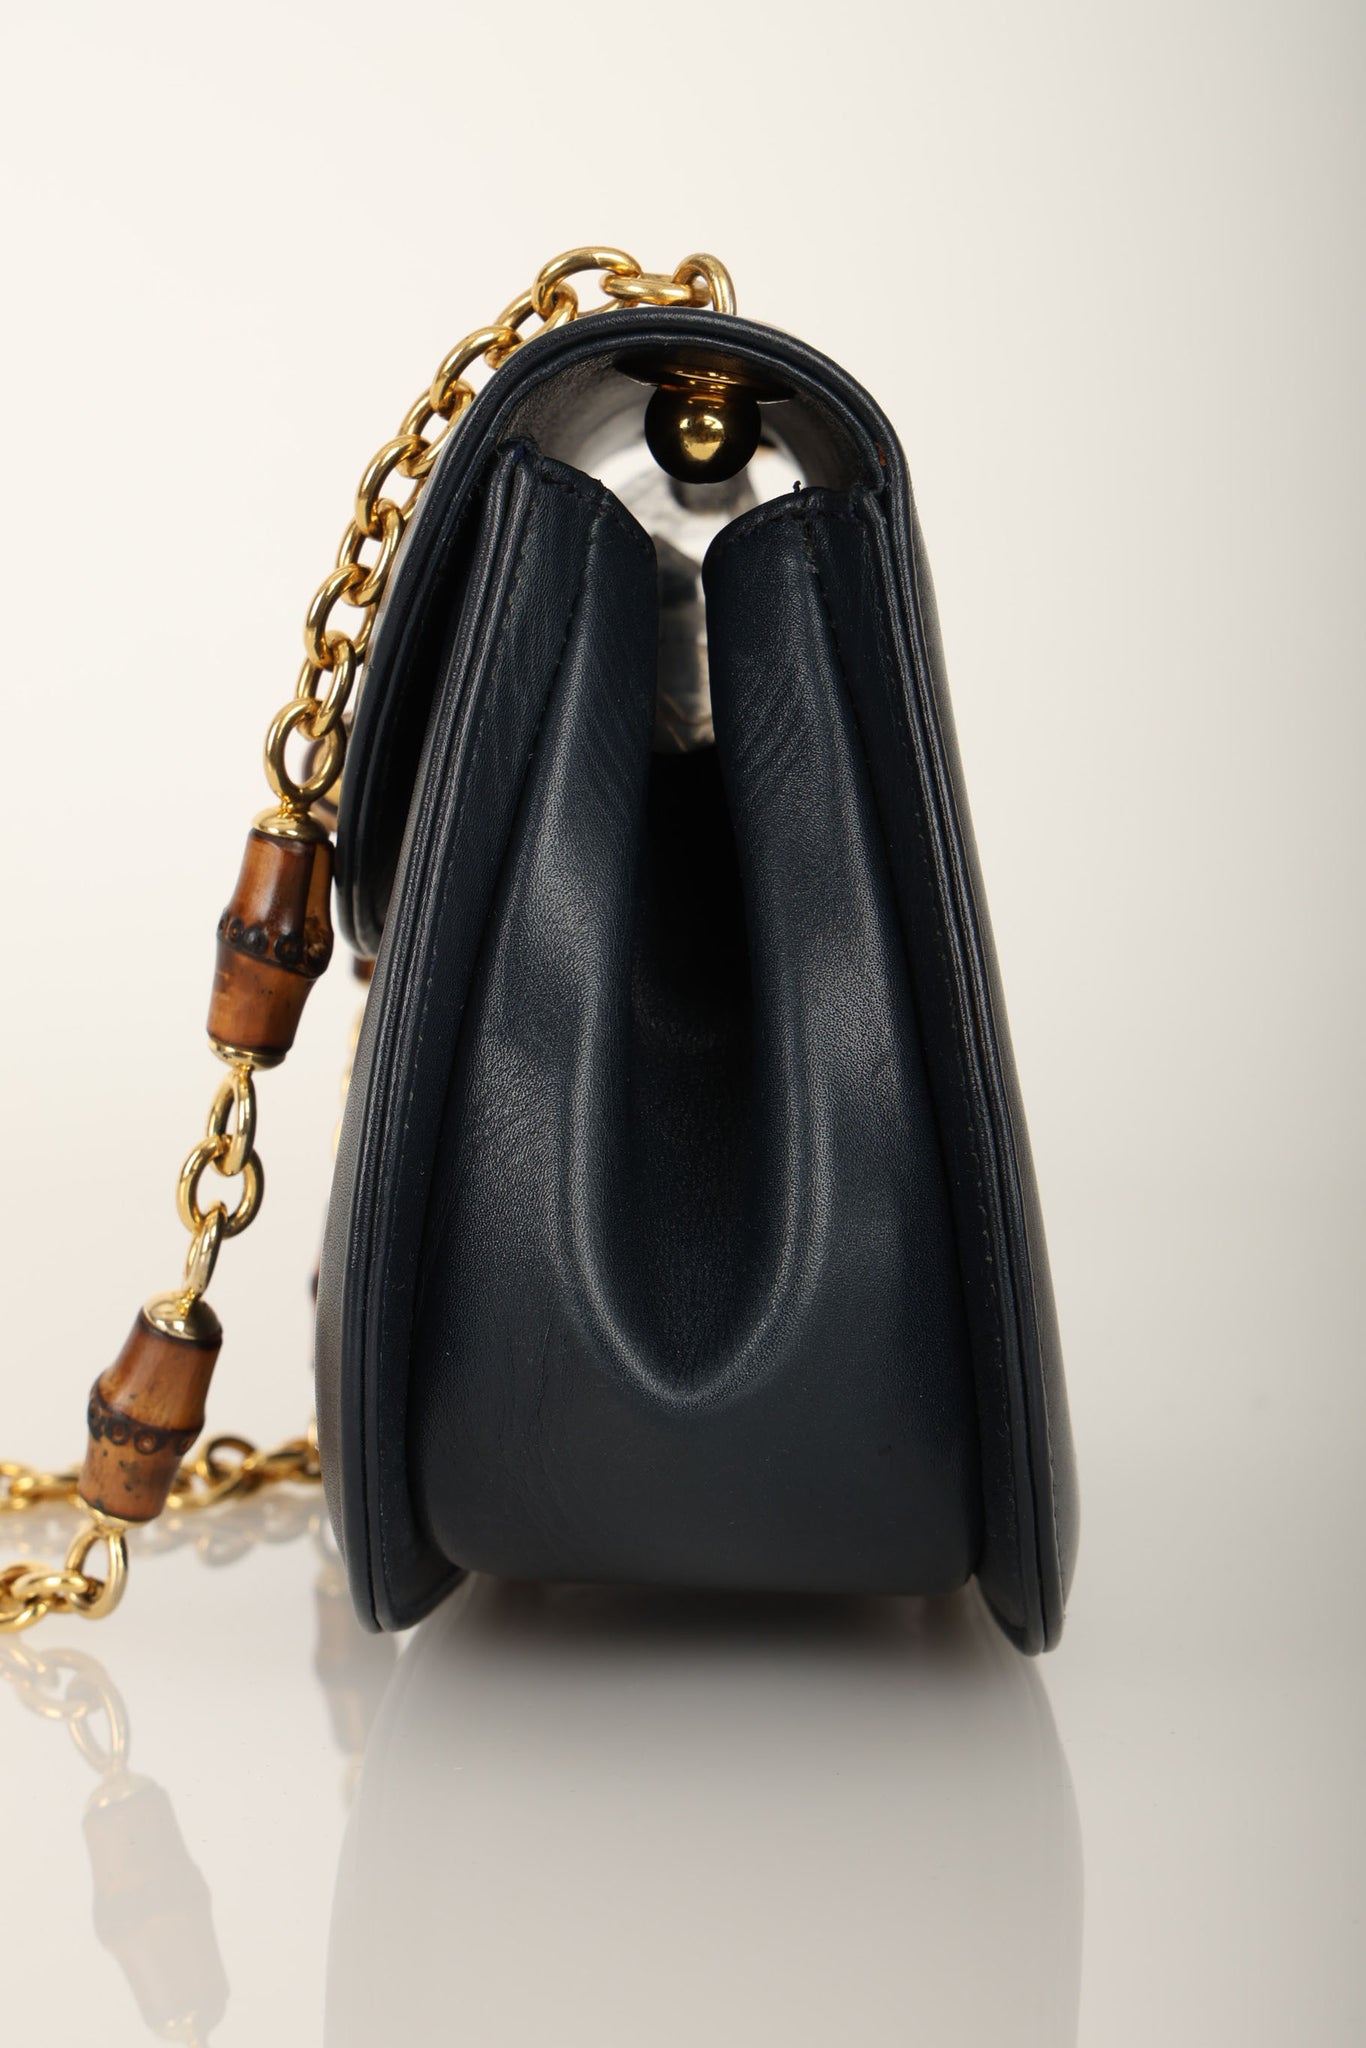 Ultra-Rare Gucci Navy Box Bamboo Chain Mini Bag